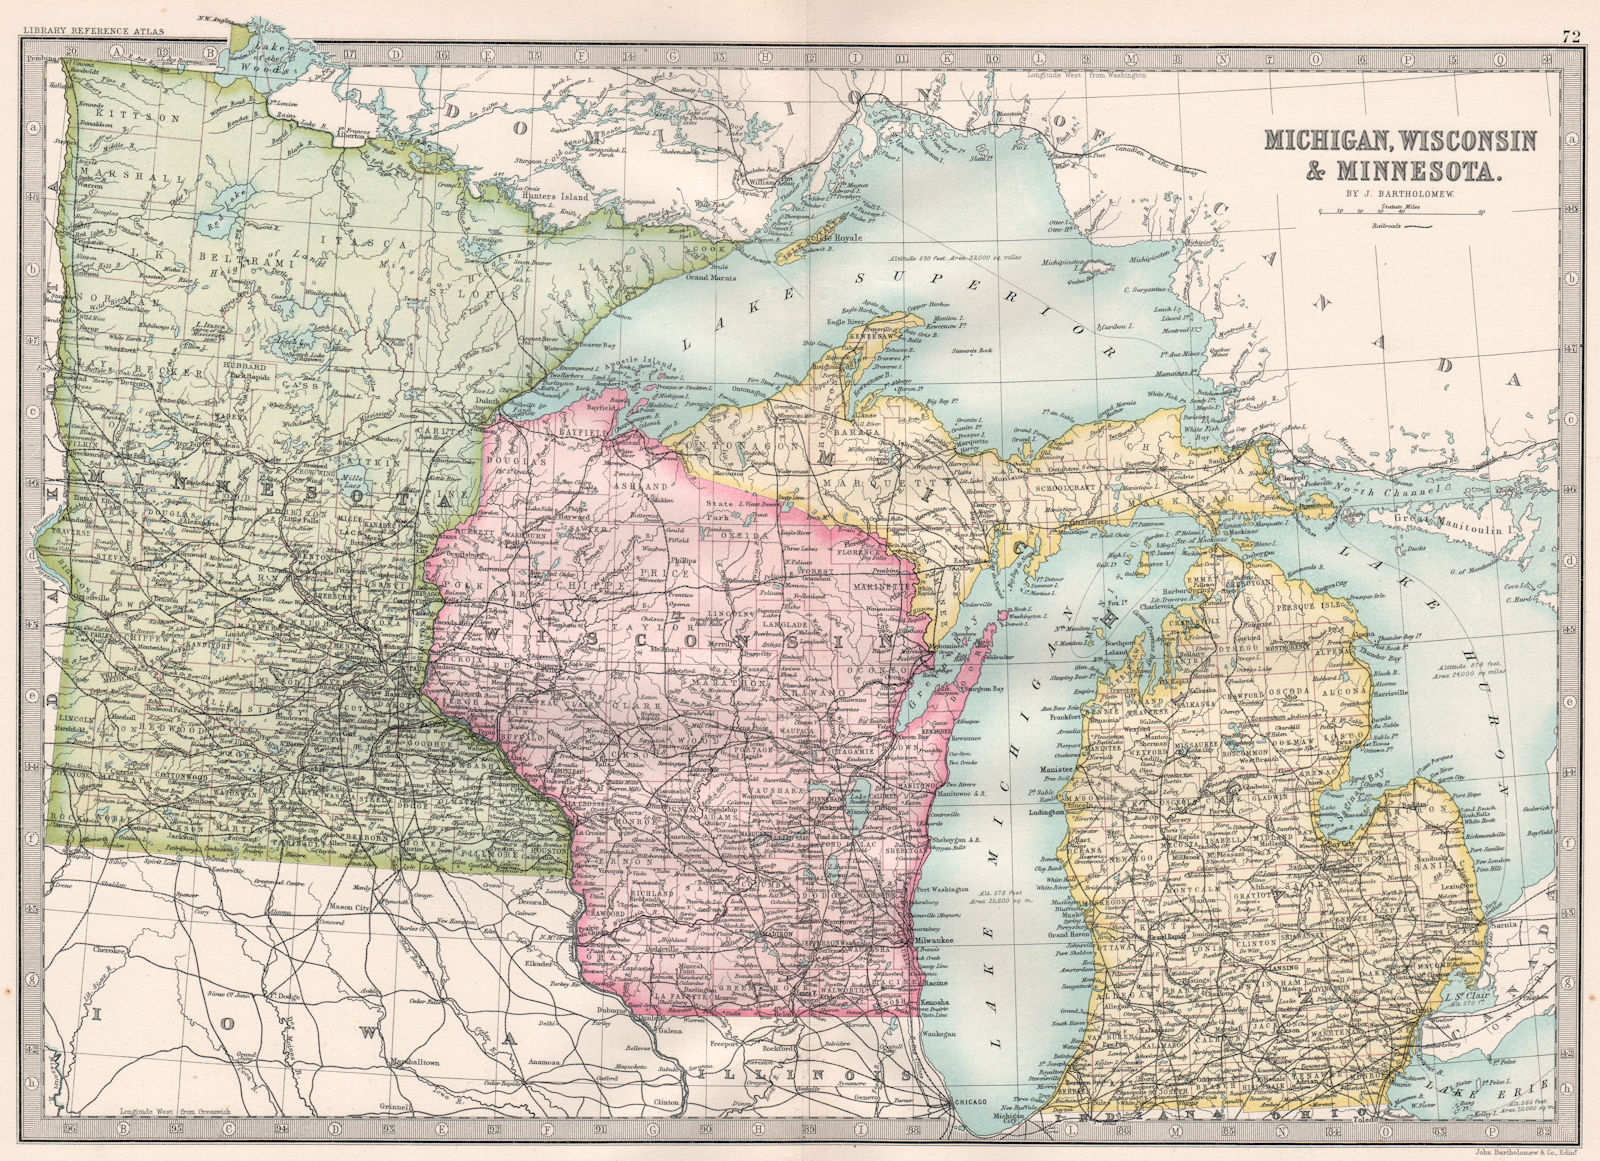 Associate Product MIDWESTERN USA. Michigan, Wisconsin & Minnesota. BARTHOLOMEW 1890 old map